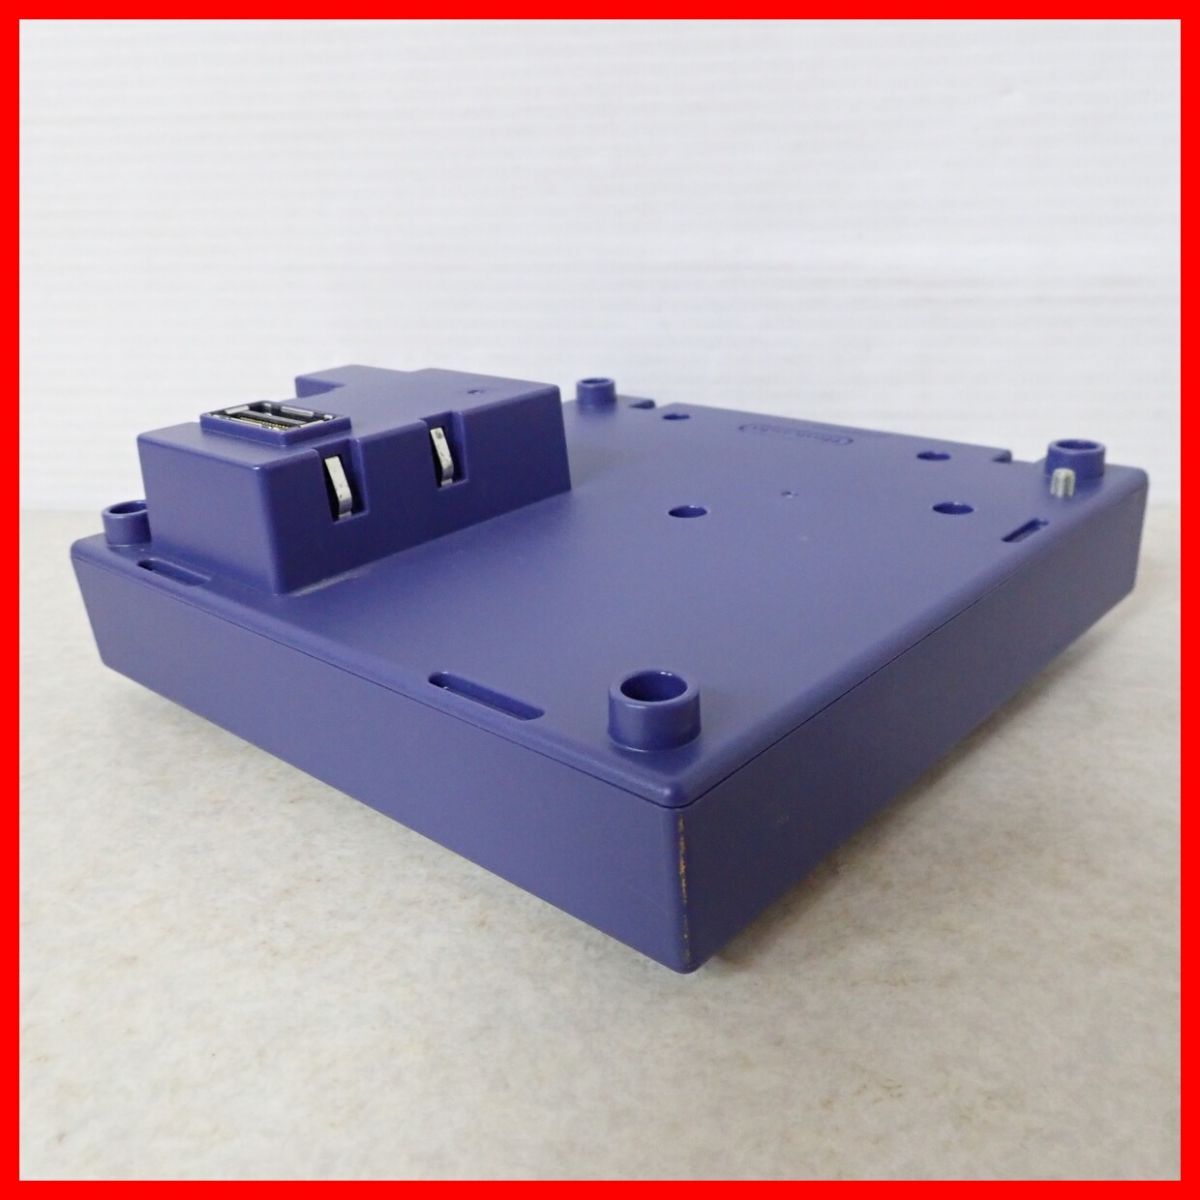 * рабочий товар GC Game Cube Game Boy плеер violet корпус + старт выше диск комплект GAME BOY PLAYER nintendo [10